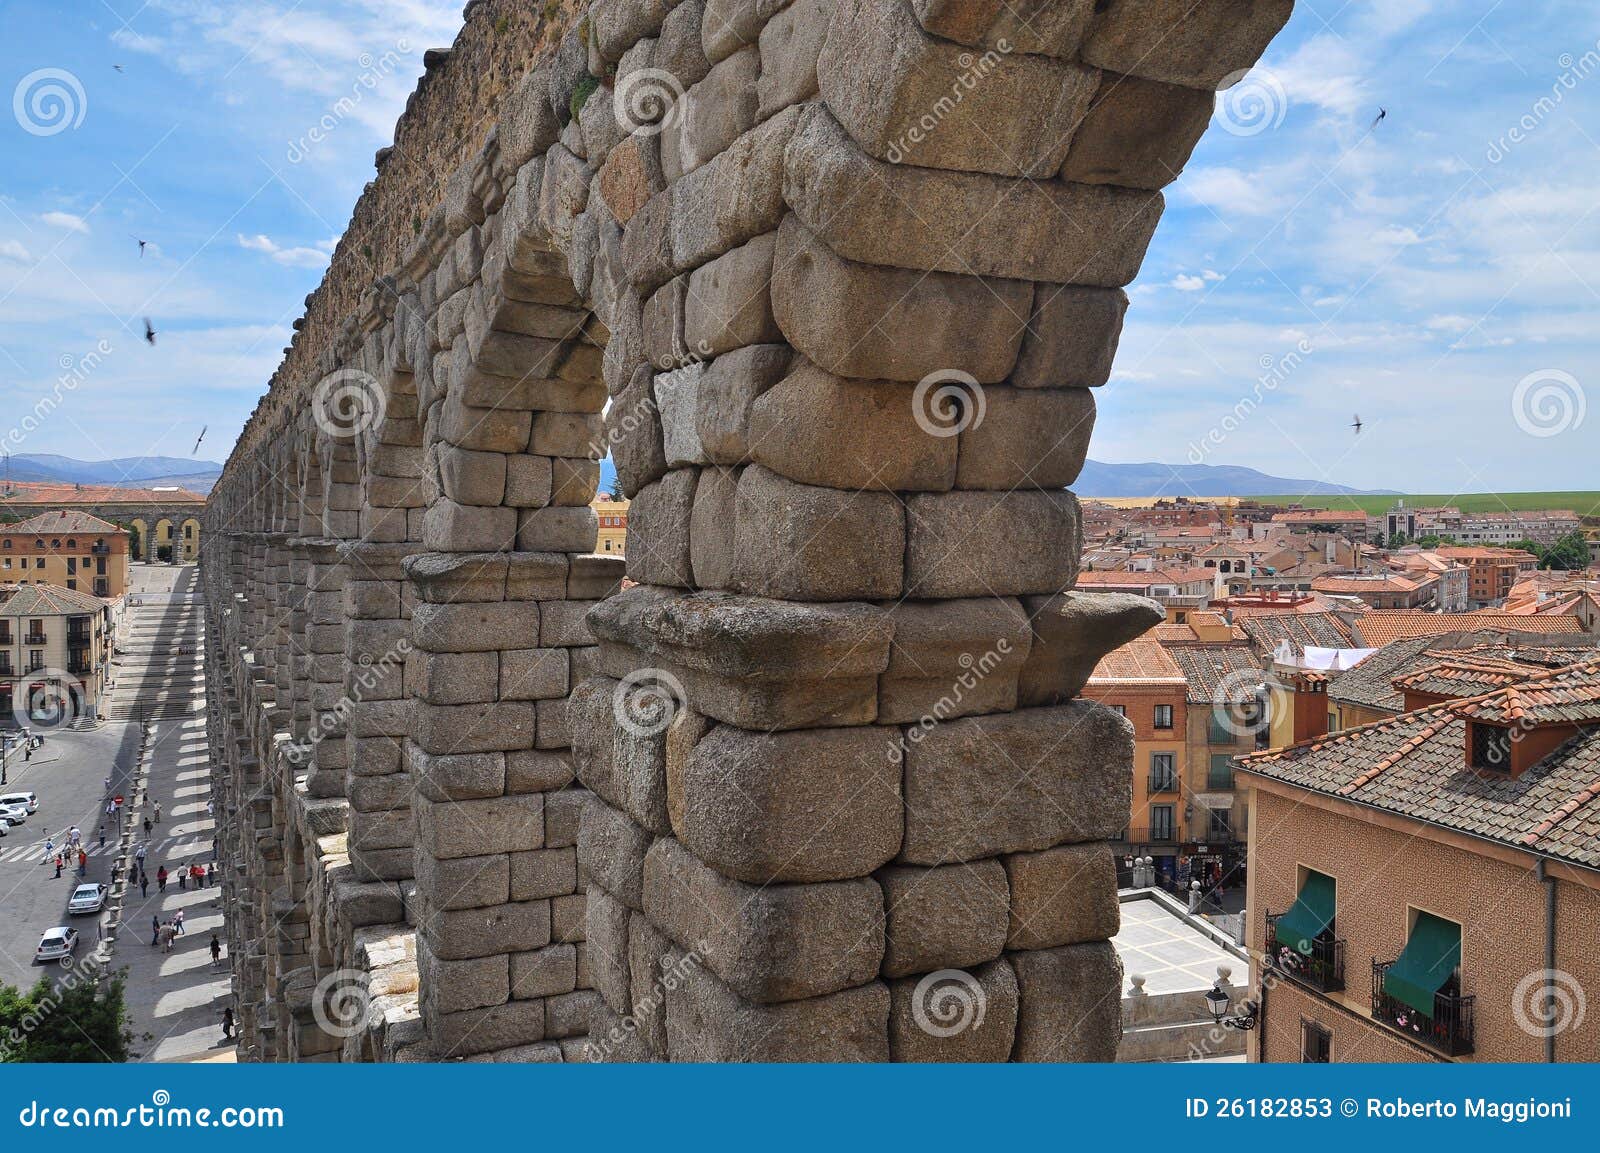 segovia roman aqueduct. castile region, spain